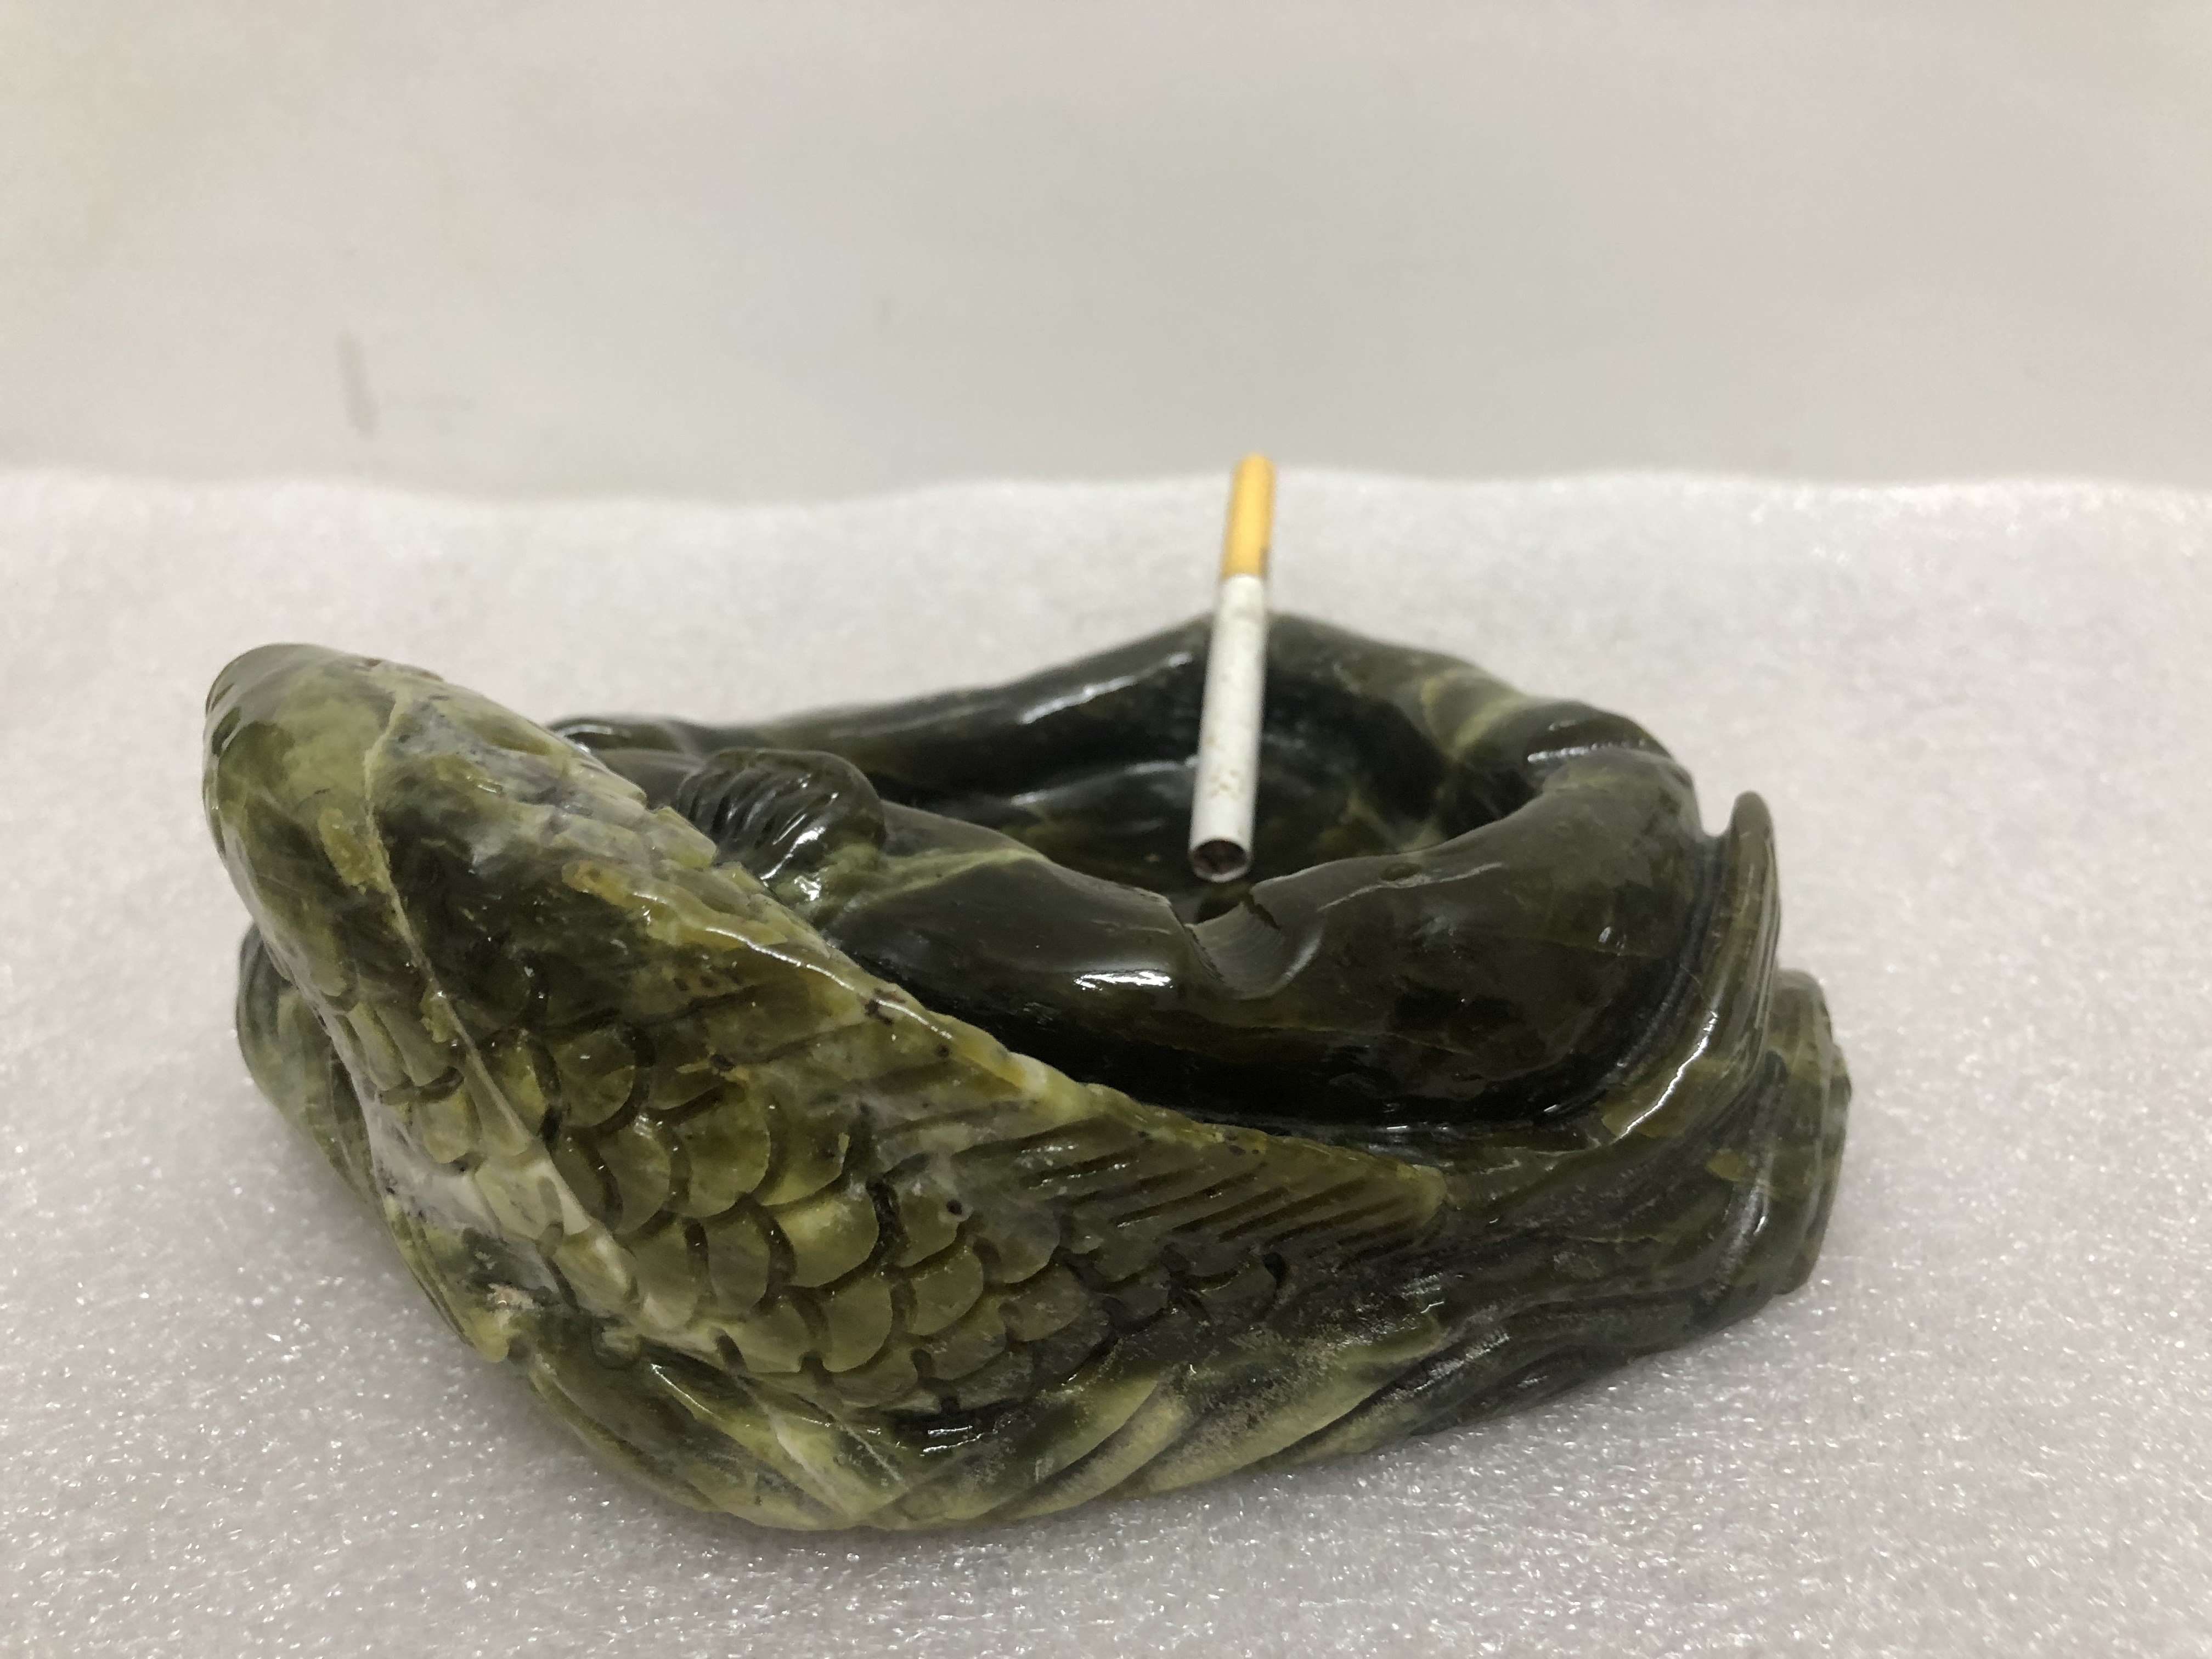 Gạt tàn thuốc lá bằng đá tự nhiên ngọc serpentine hoa văn tạc hình cá chép đá ngọc 18cm nặng 3kg GATAN.001